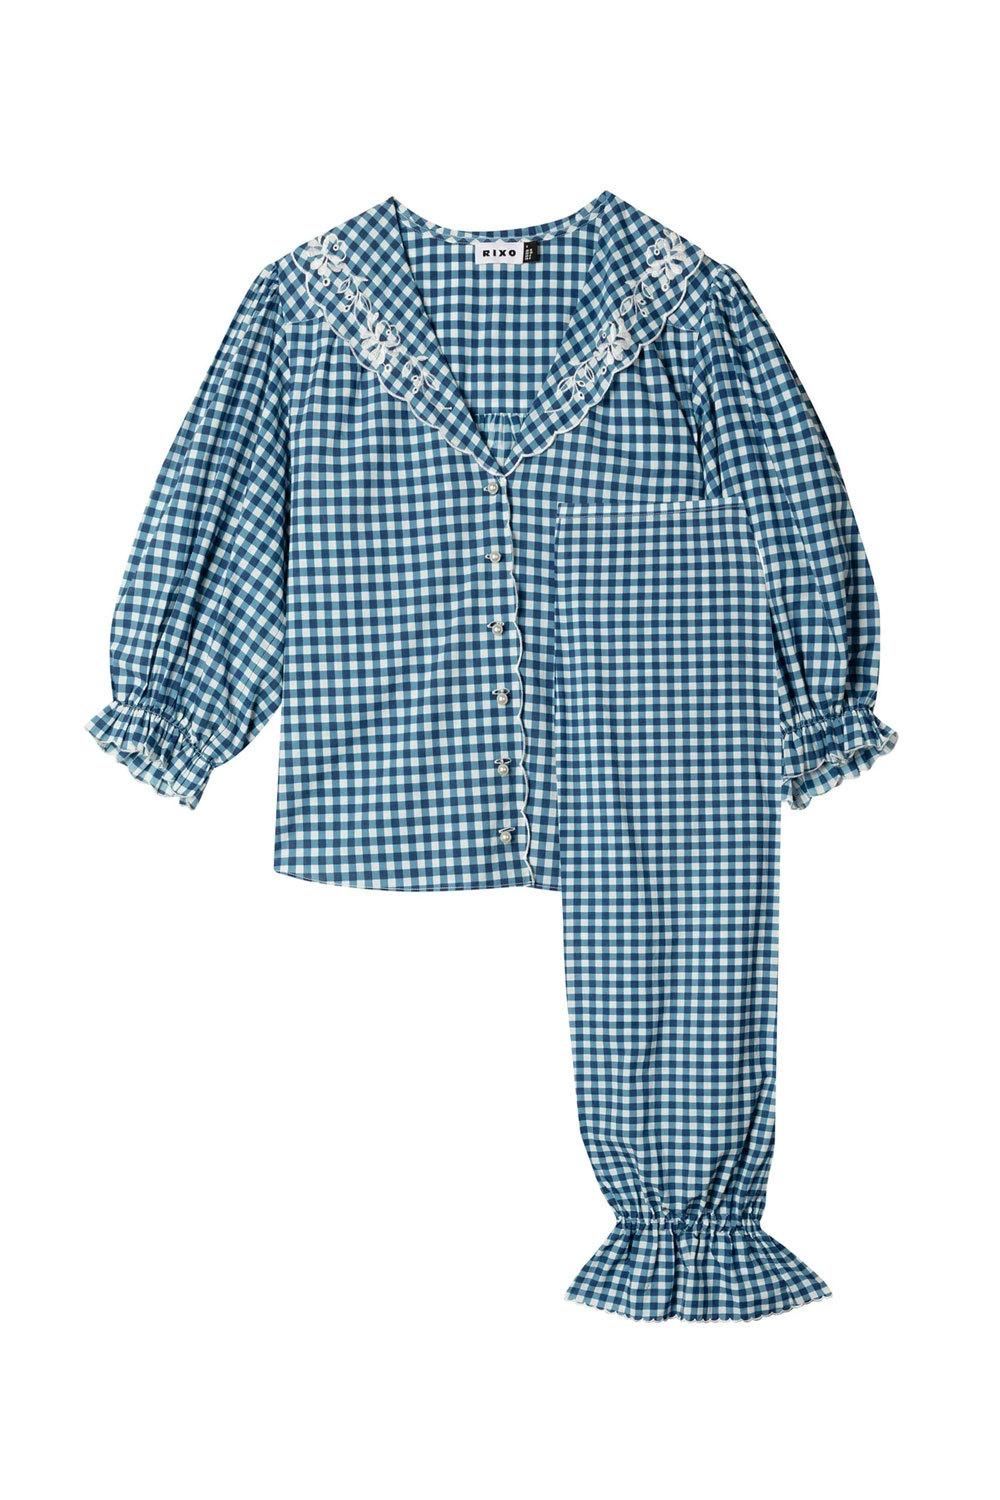 RIXO pidžama proljeće 2021.